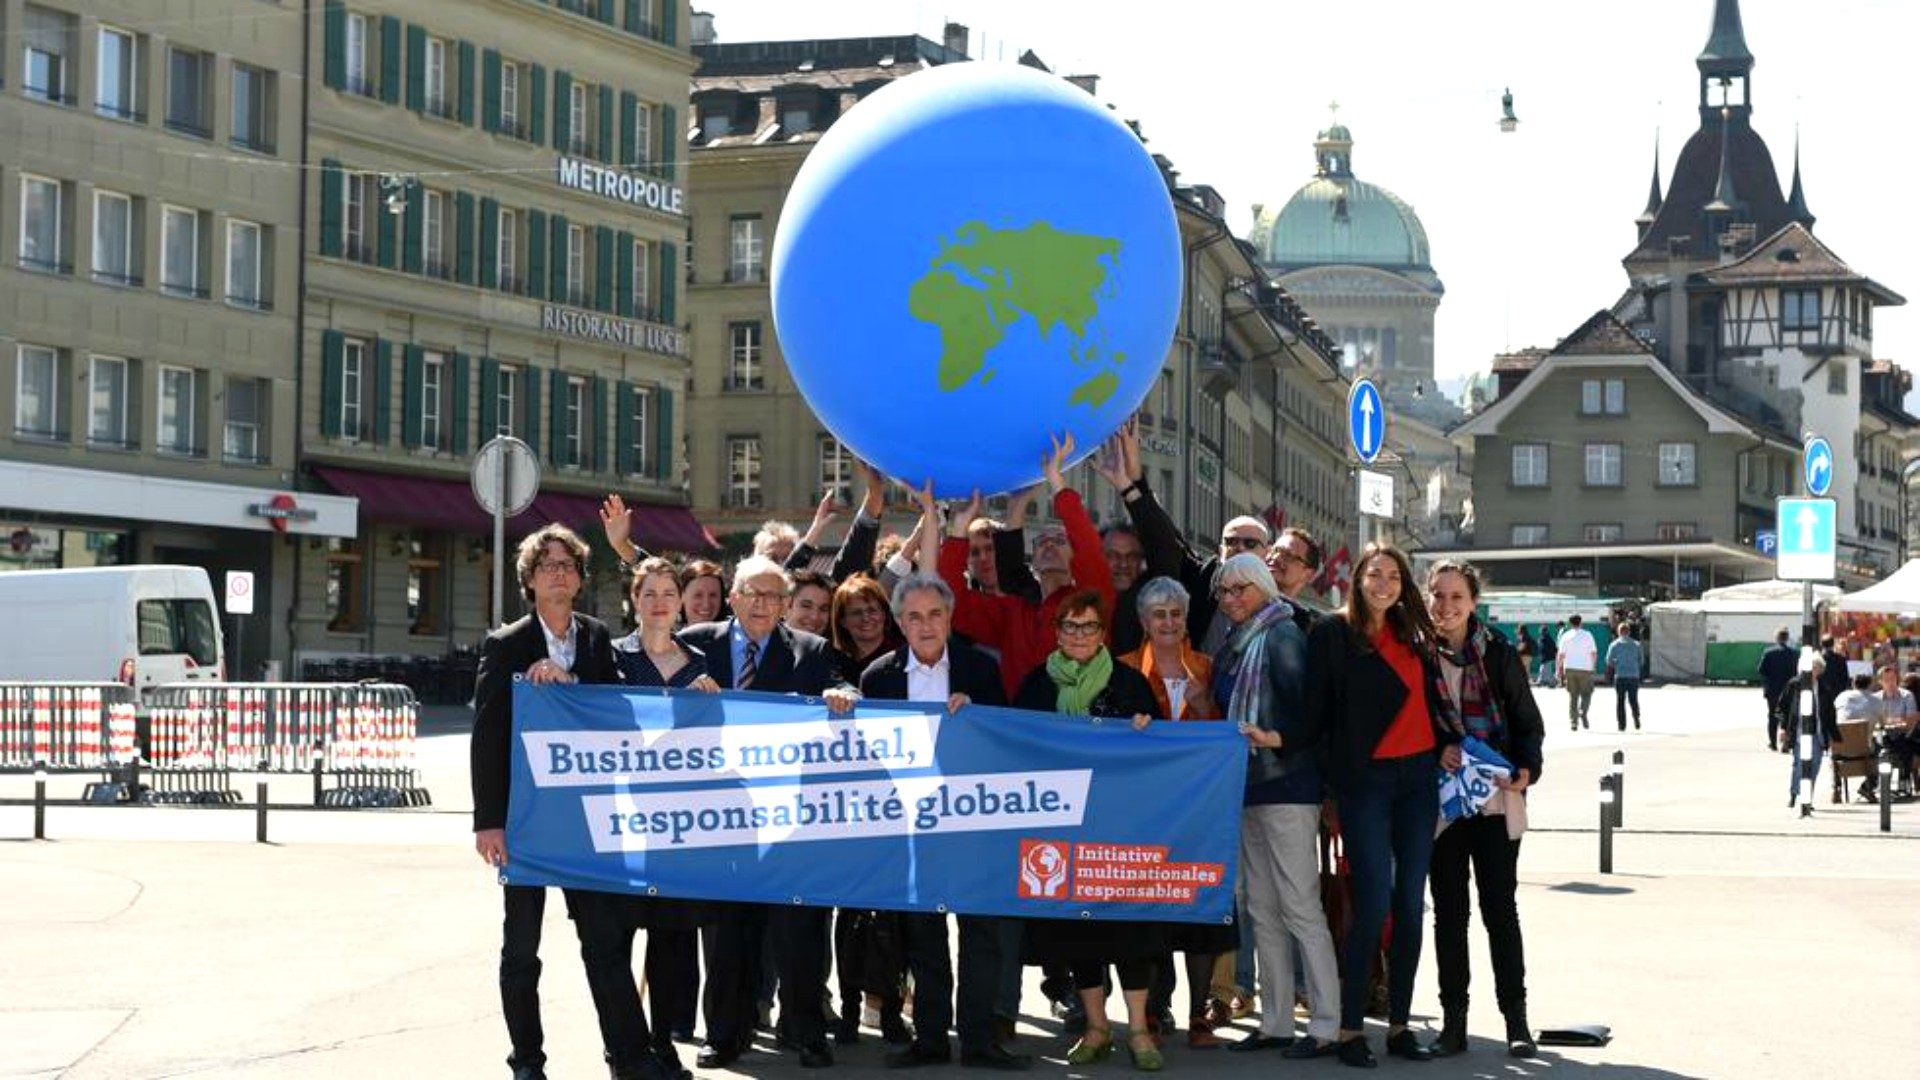 Manifestation en faveur de l'initiative pour des multinationales responsables | © www.publiceye.ch  